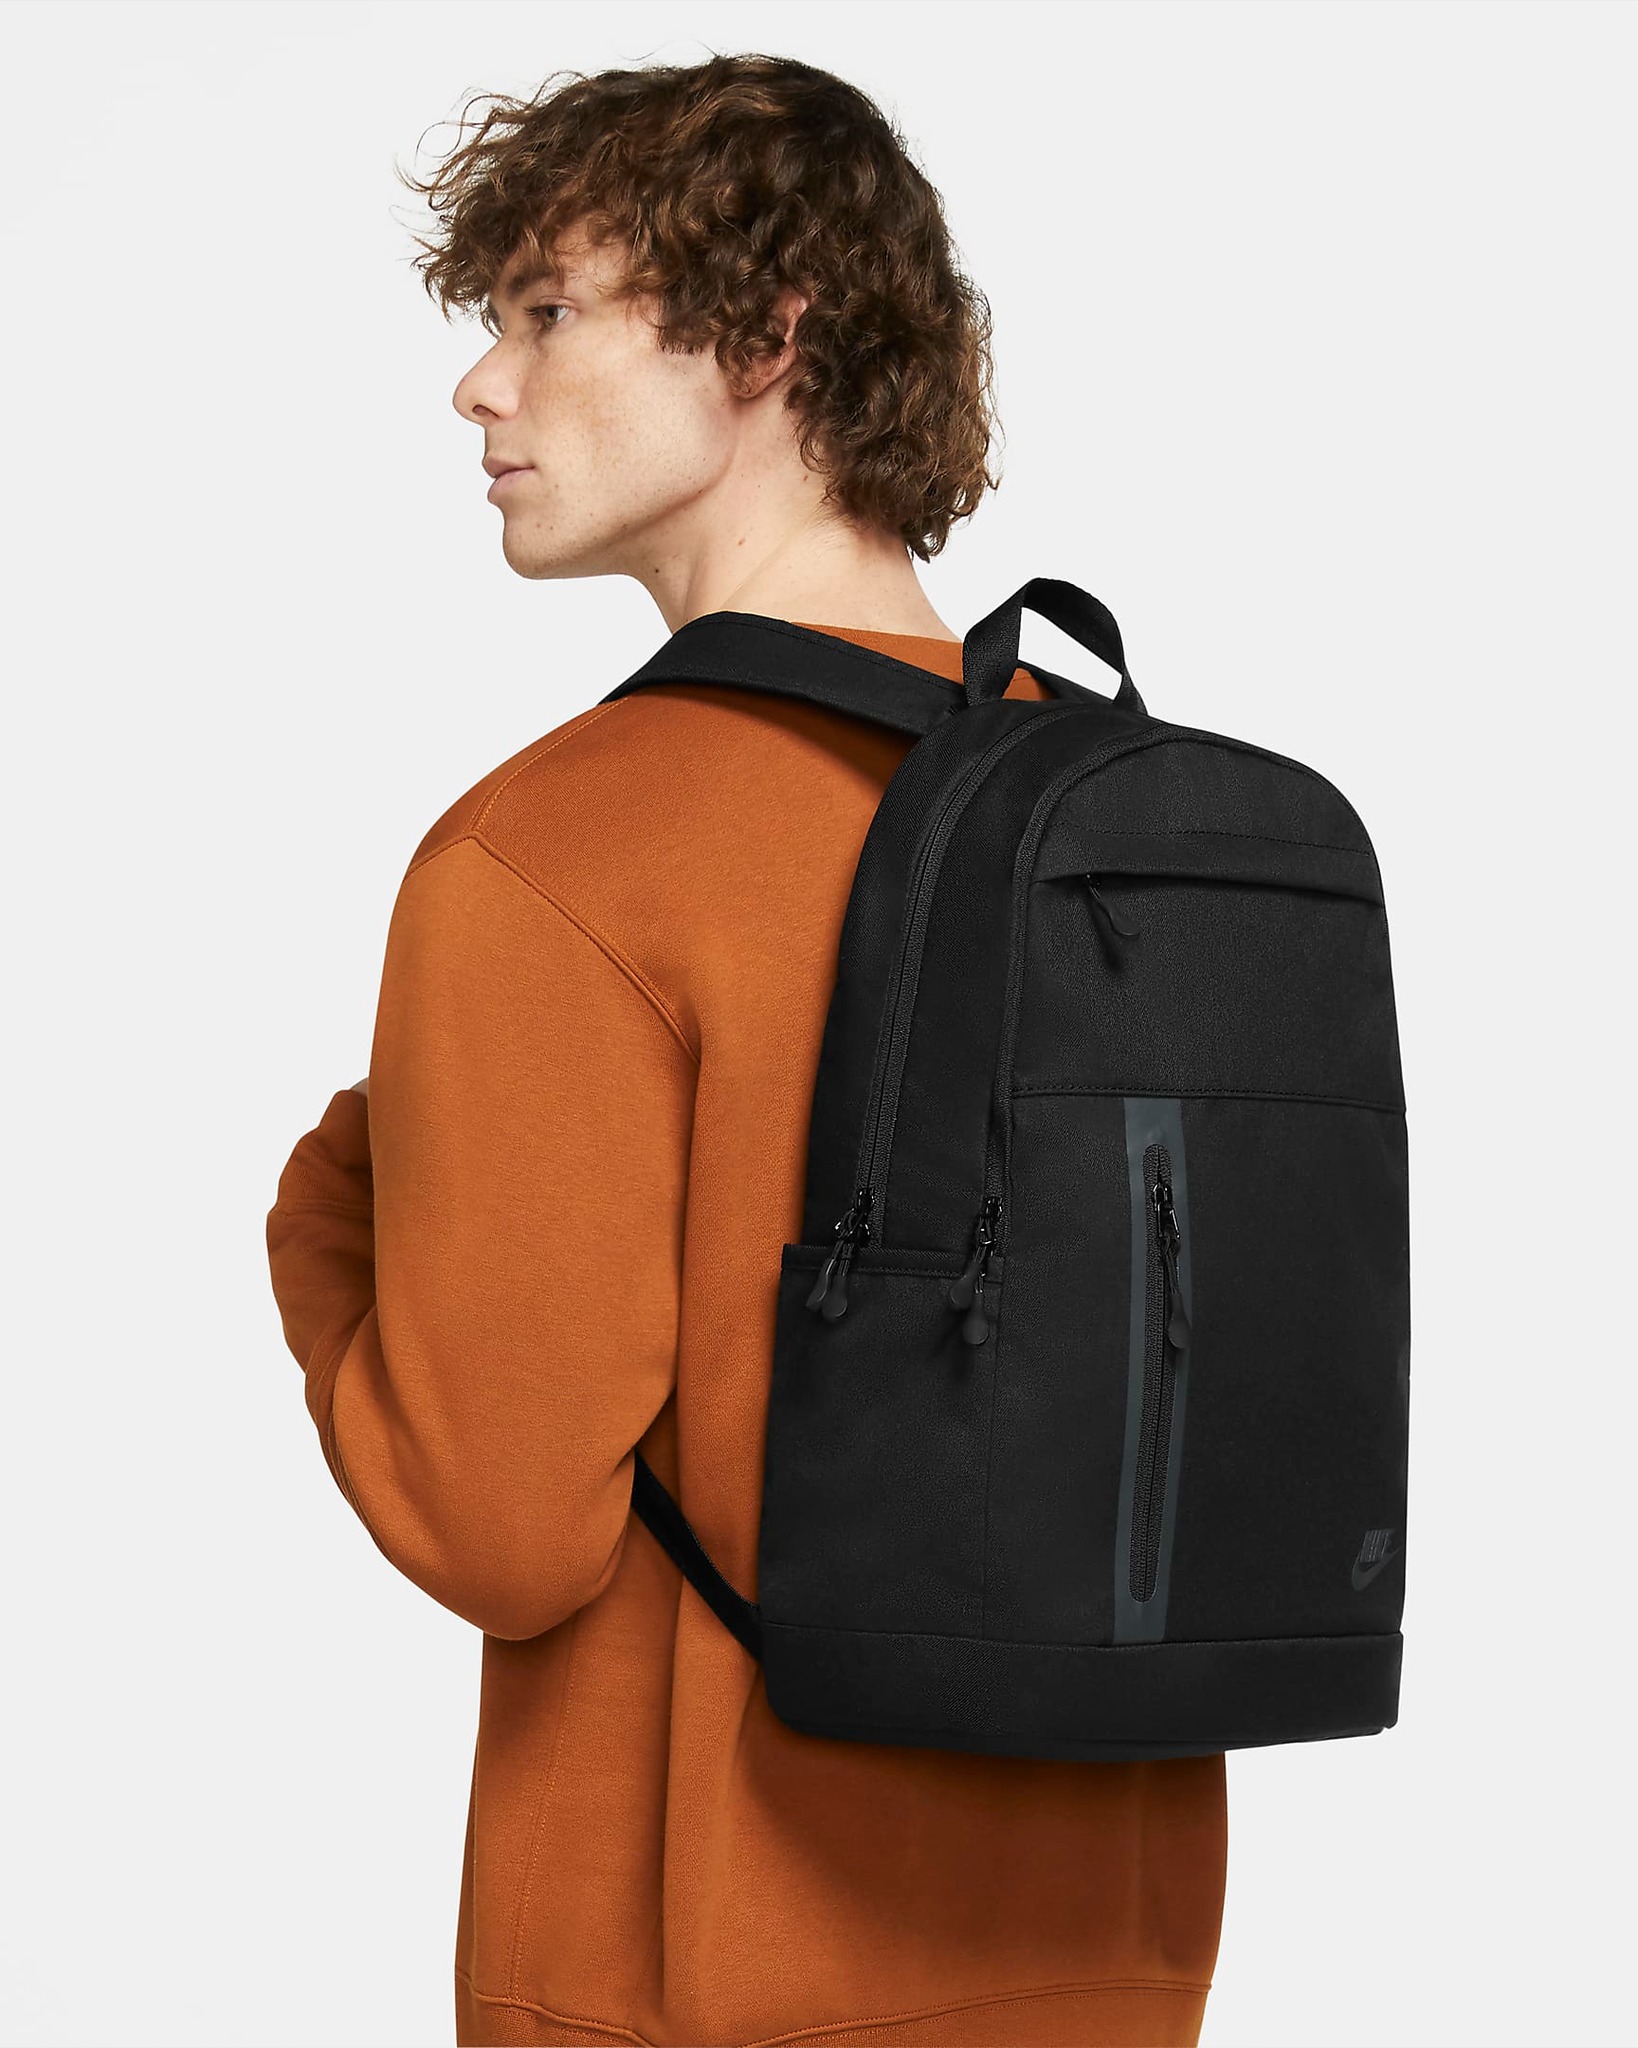 PHỤ KIỆN CHÍNH HÃNG - Balo Nike Elemental Premium Backpack Black - DN2555-010